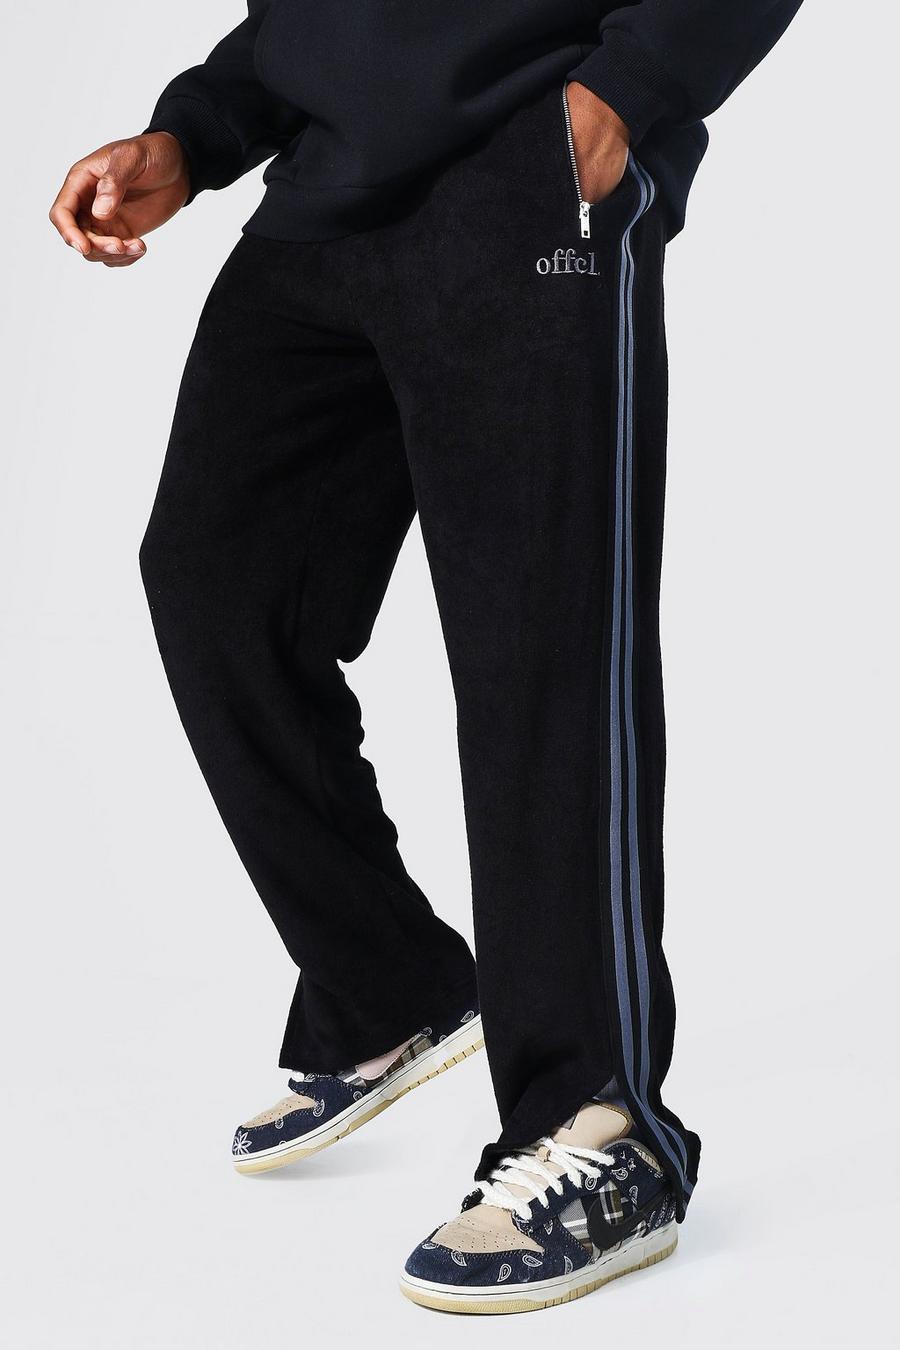 Pantaloni tuta Official in spugna con spacco, taglio comodo, Black negro image number 1